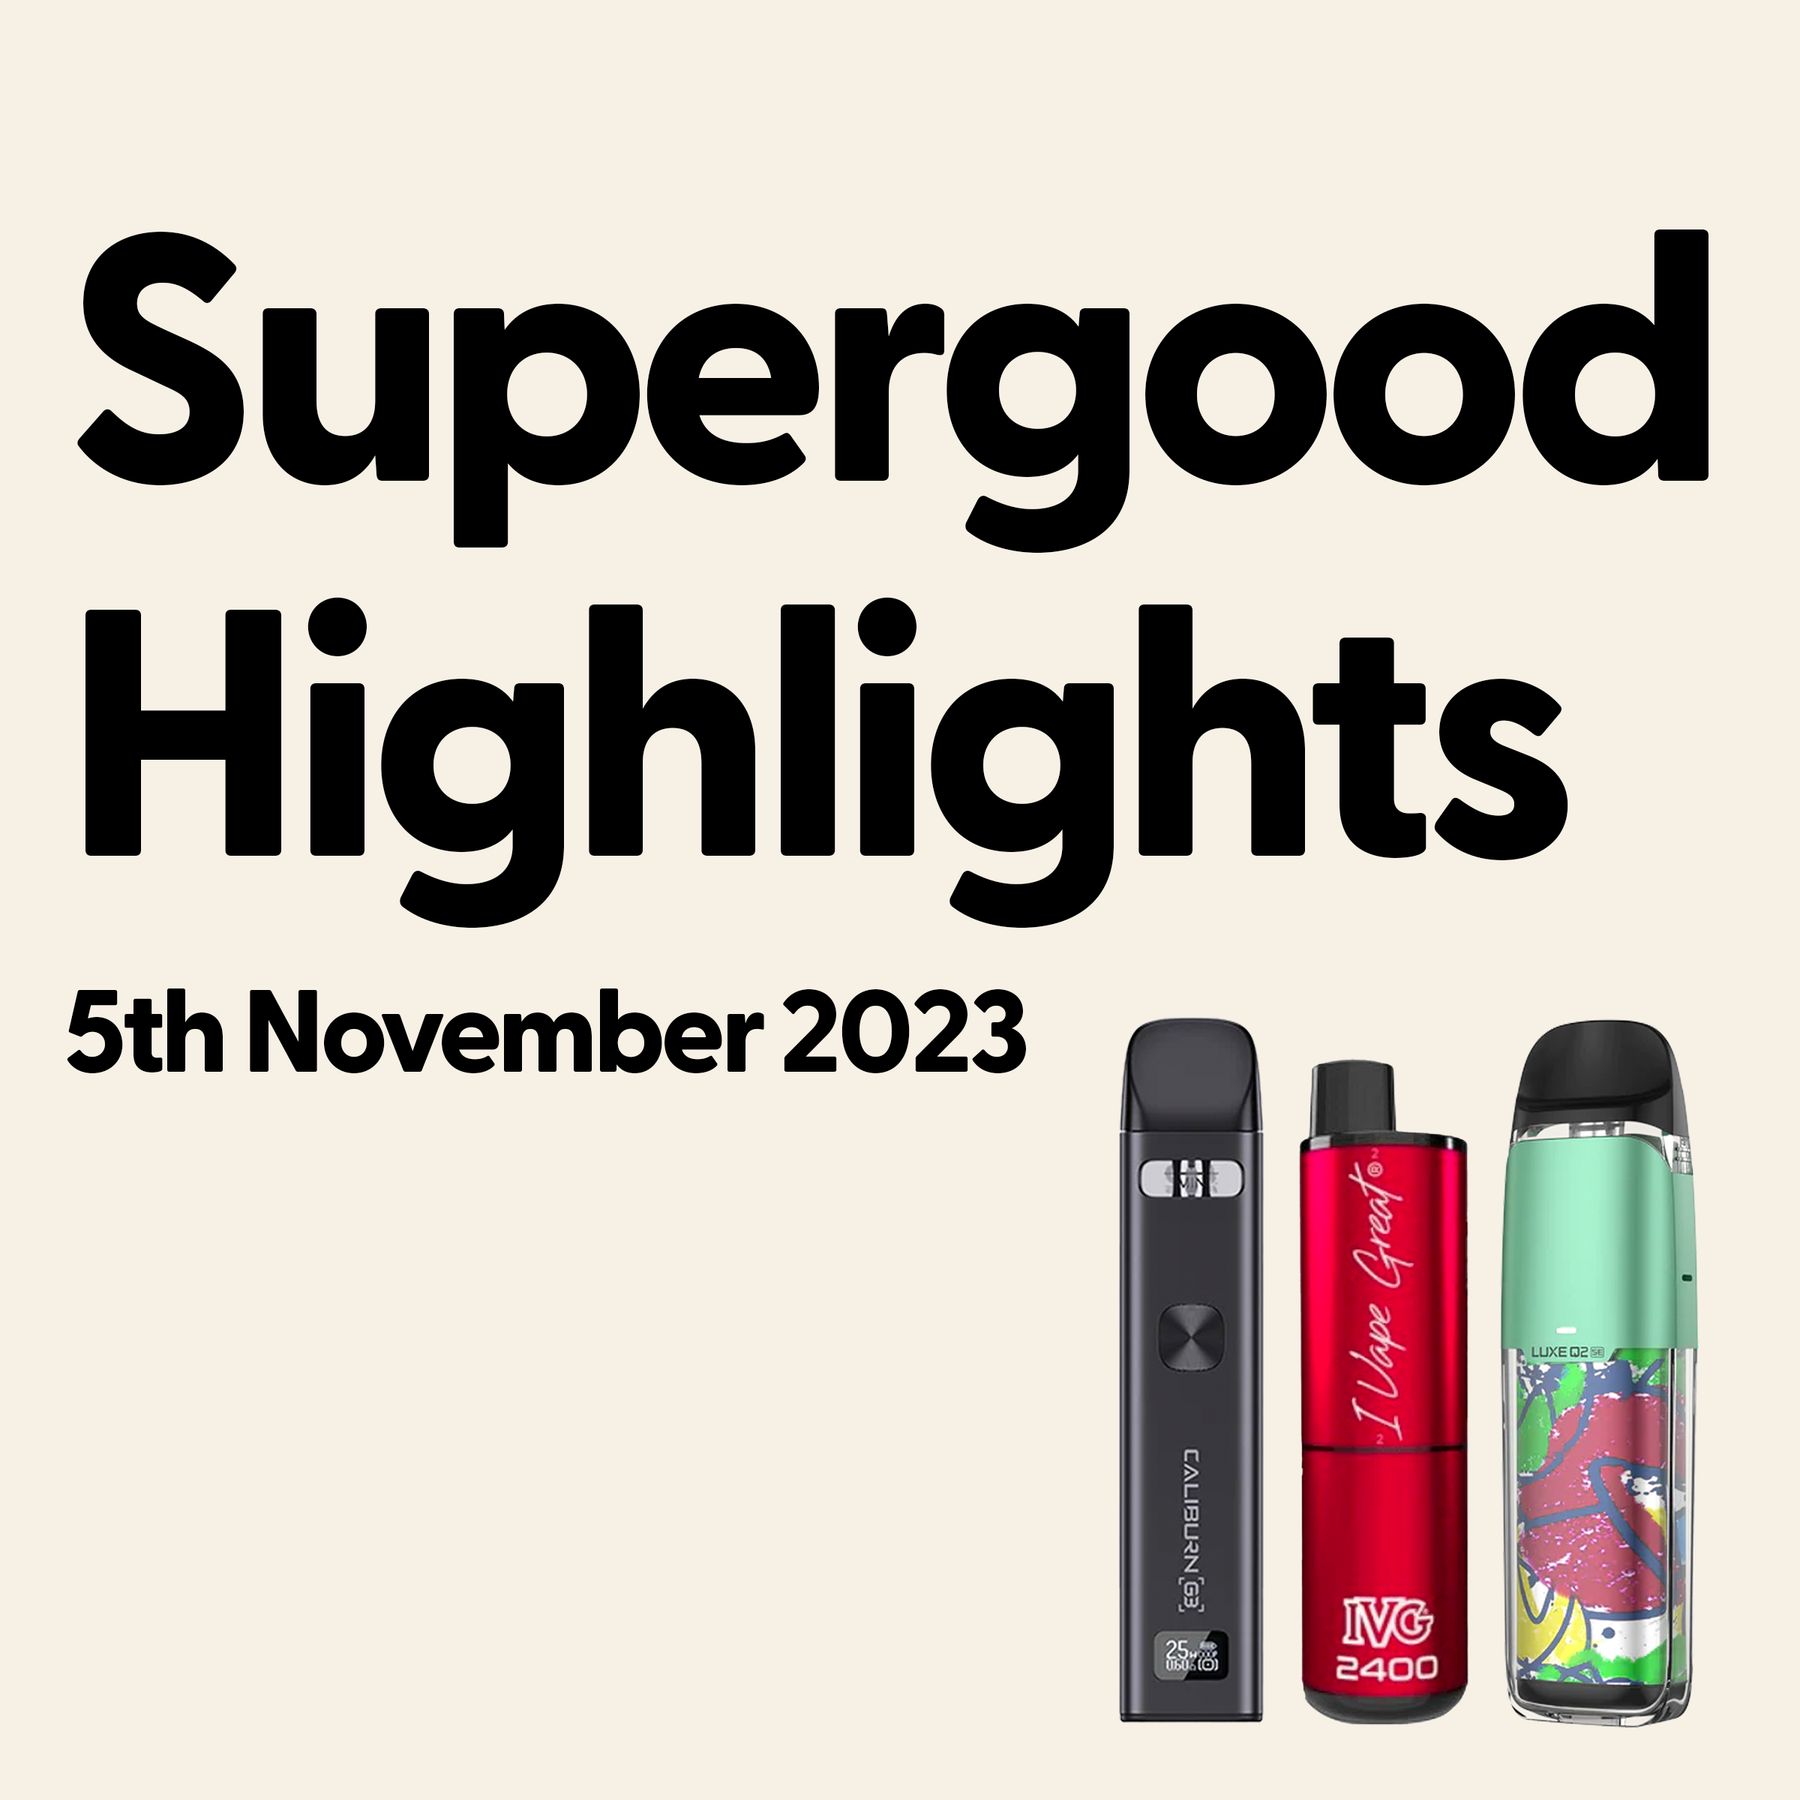 Supergood Highlights | 5th November 2023